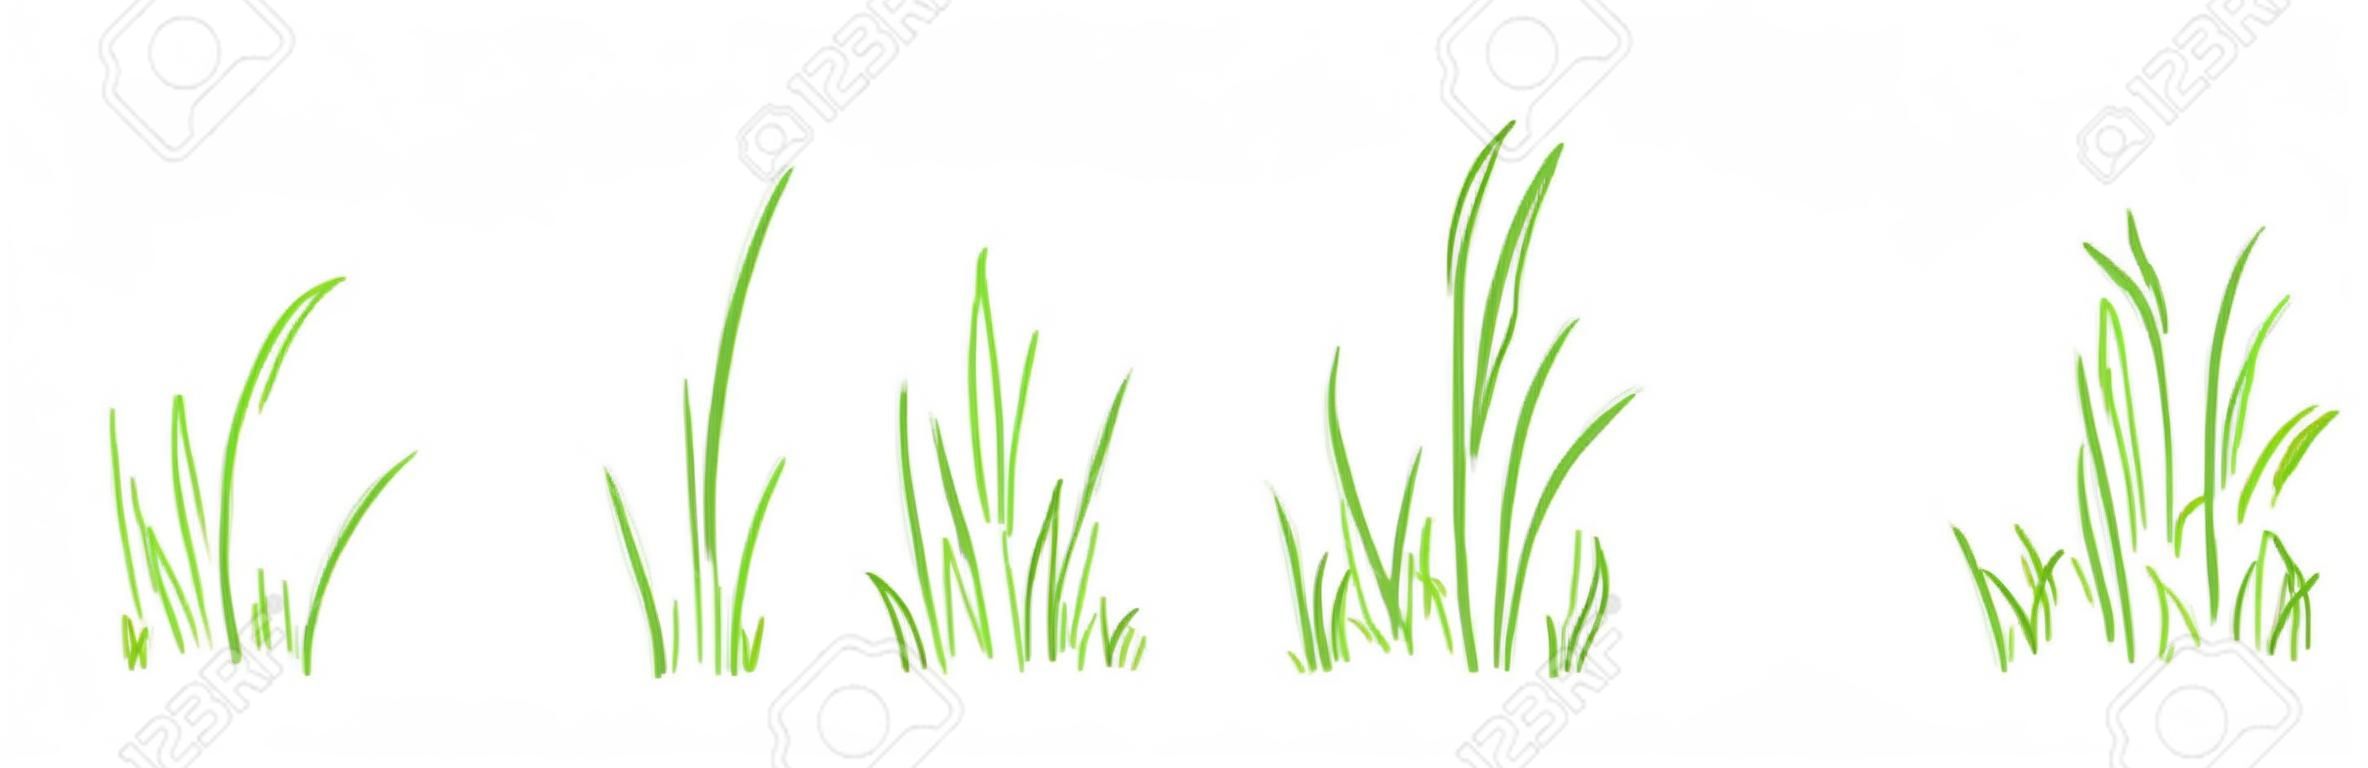 Grasbuschlinie Vektorsatz handgezeichnet, Skizzenelemente Wiese und Landschaft, Scribble-Rasen, grüner Randentwurf isoliert auf weißem Hintergrund. Abbildung der Natur